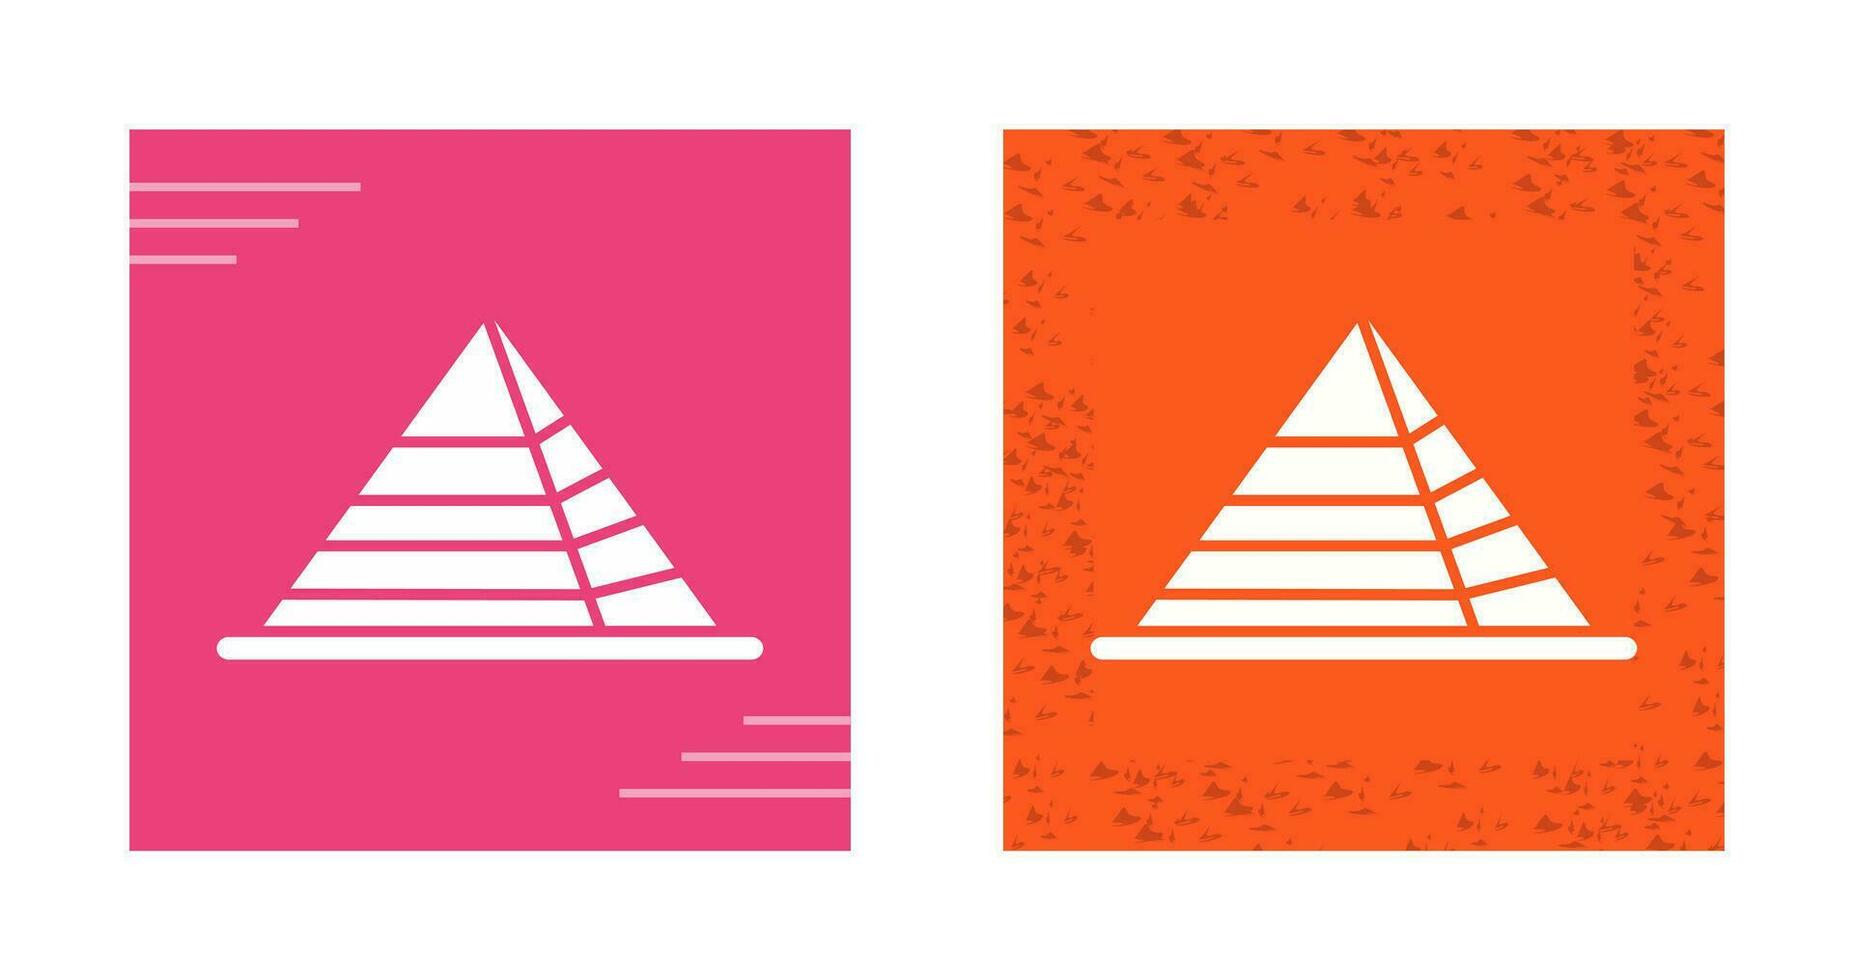 icône de vecteur de pyramide